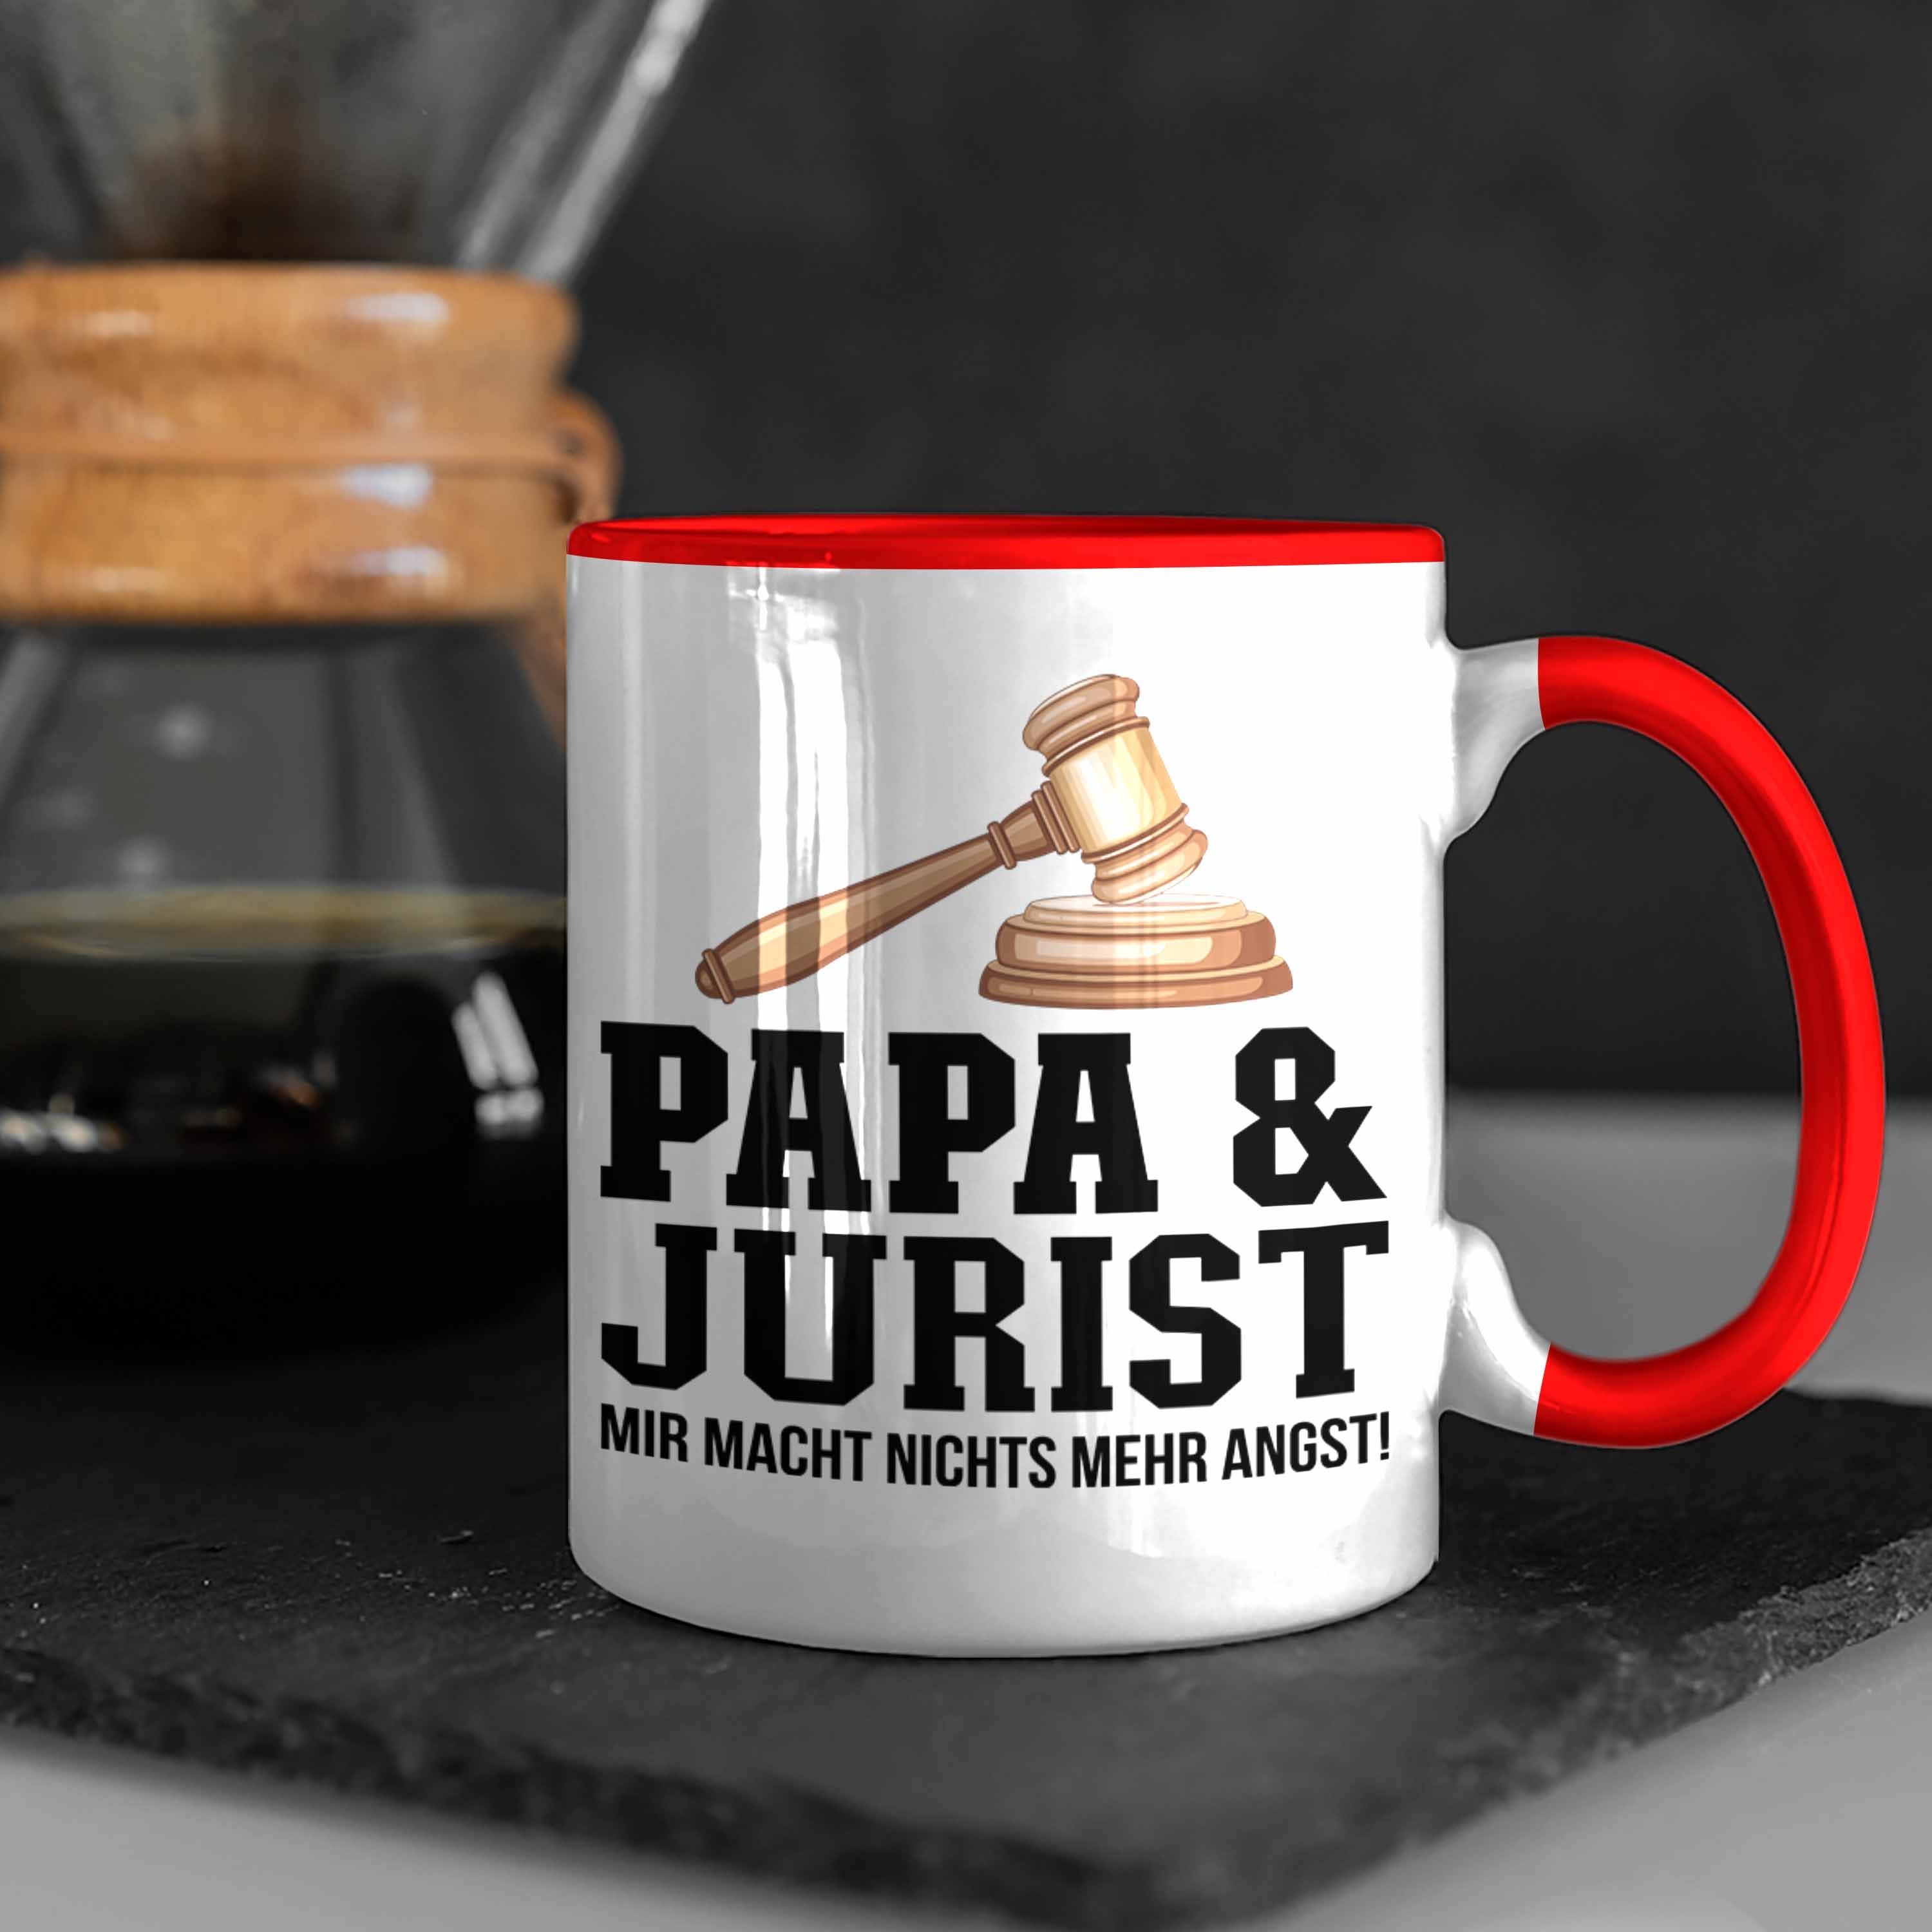 Trendation Tasse Trendation - Tasse Juriste für Jura Geschenkidee Papa Jurist Vater und Rot